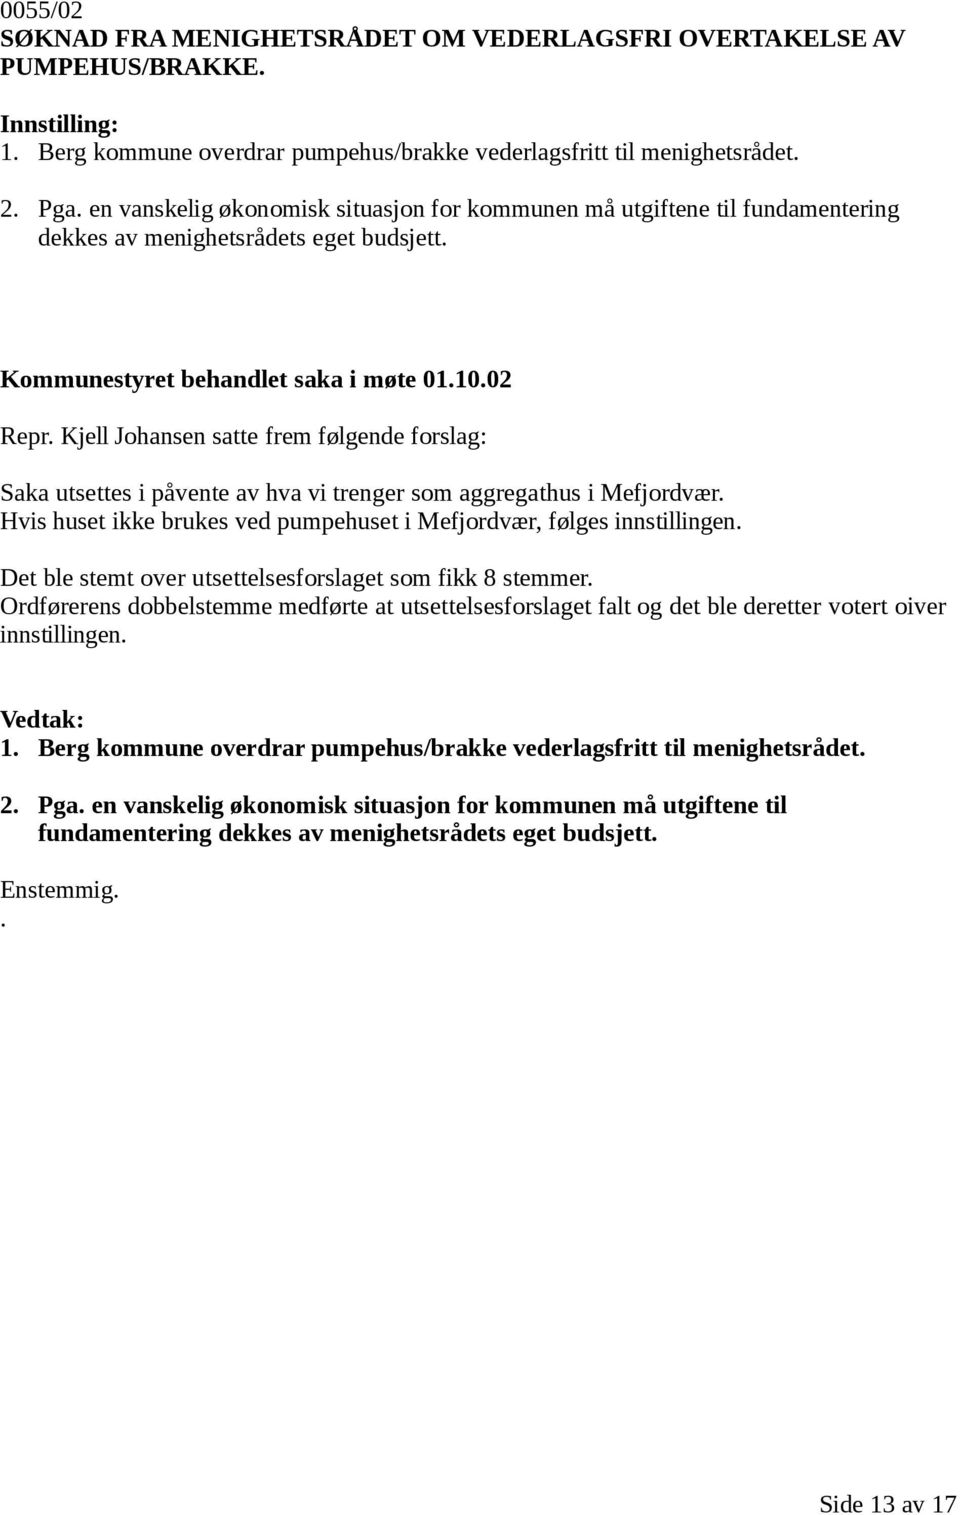 Kjell Johansen satte frem følgende forslag: Saka utsettes i påvente av hva vi trenger som aggregathus i Mefjordvær. Hvis huset ikke brukes ved pumpehuset i Mefjordvær, følges innstillingen.